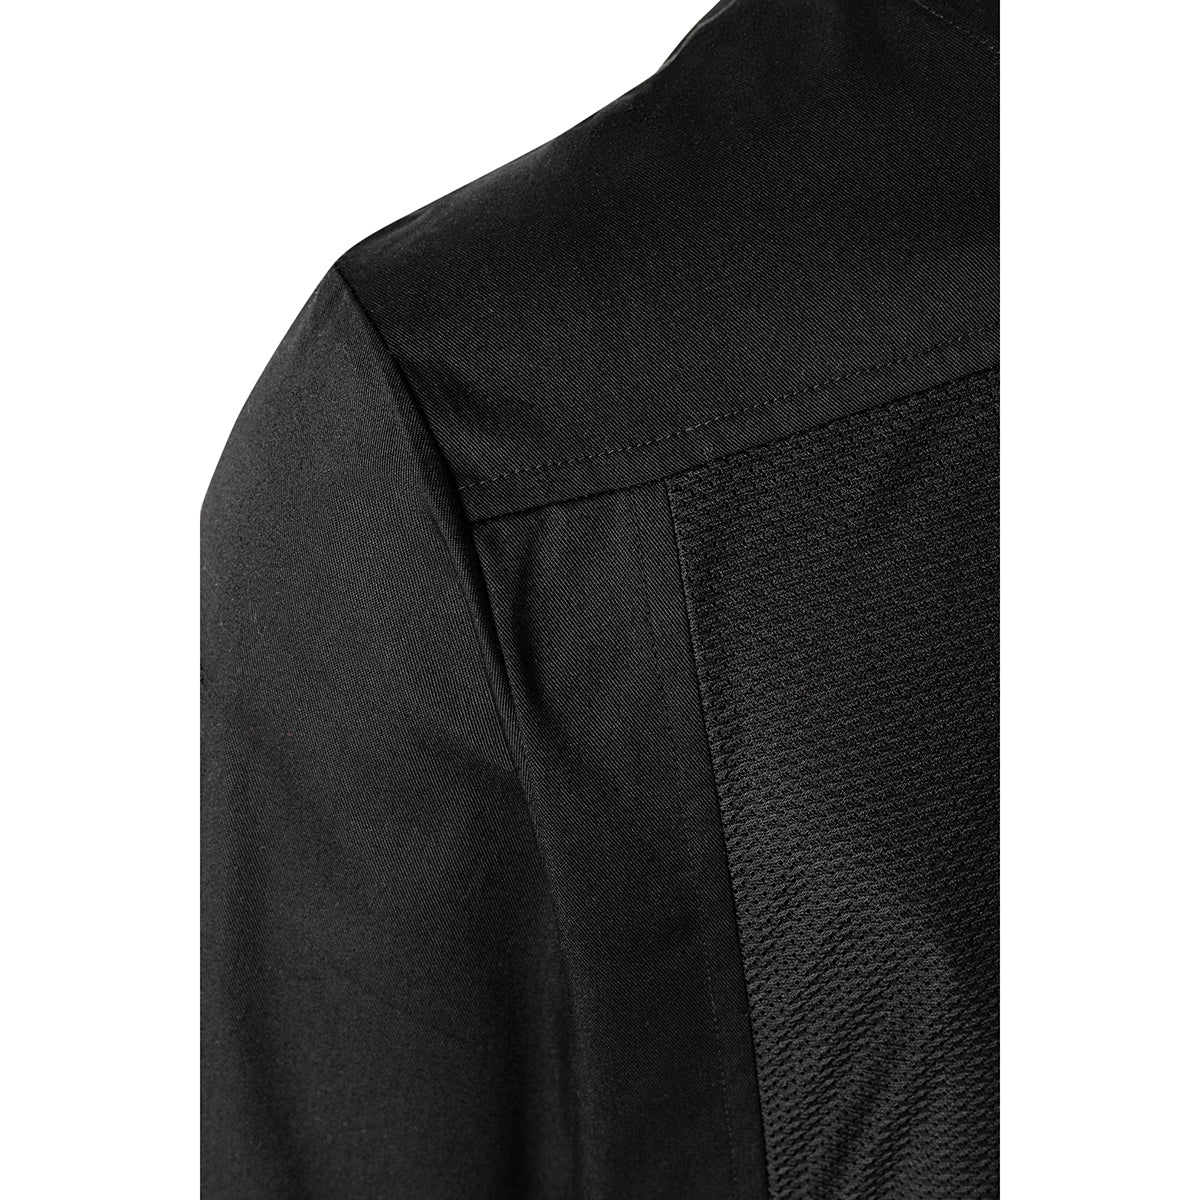 (6 stk) Karlowsky langermet skjorte - svart - str. 4XL